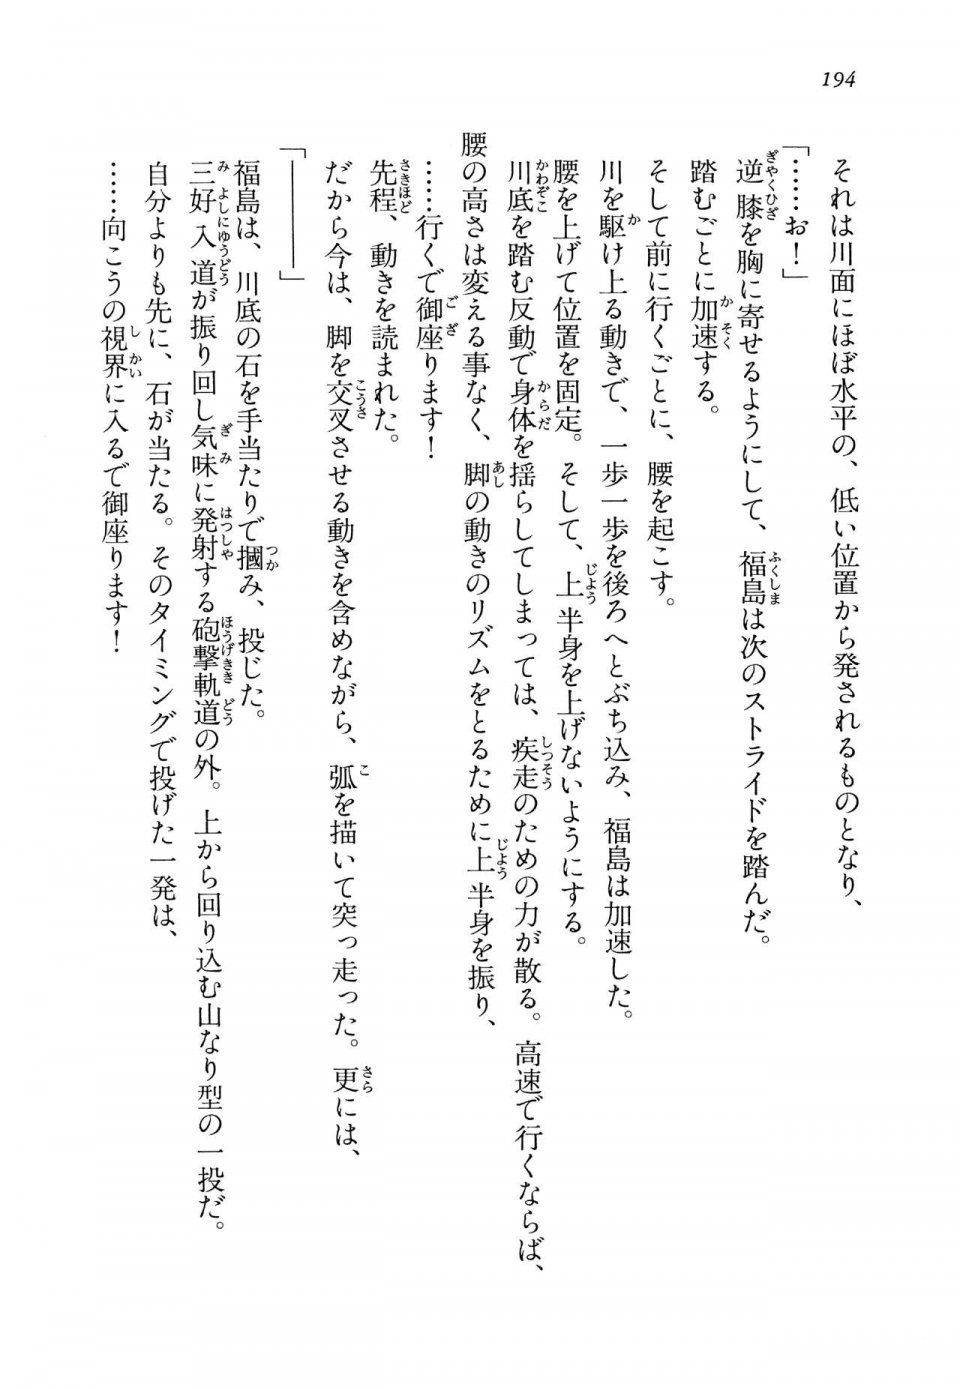 Kyoukai Senjou no Horizon LN Vol 14(6B) - Photo #194